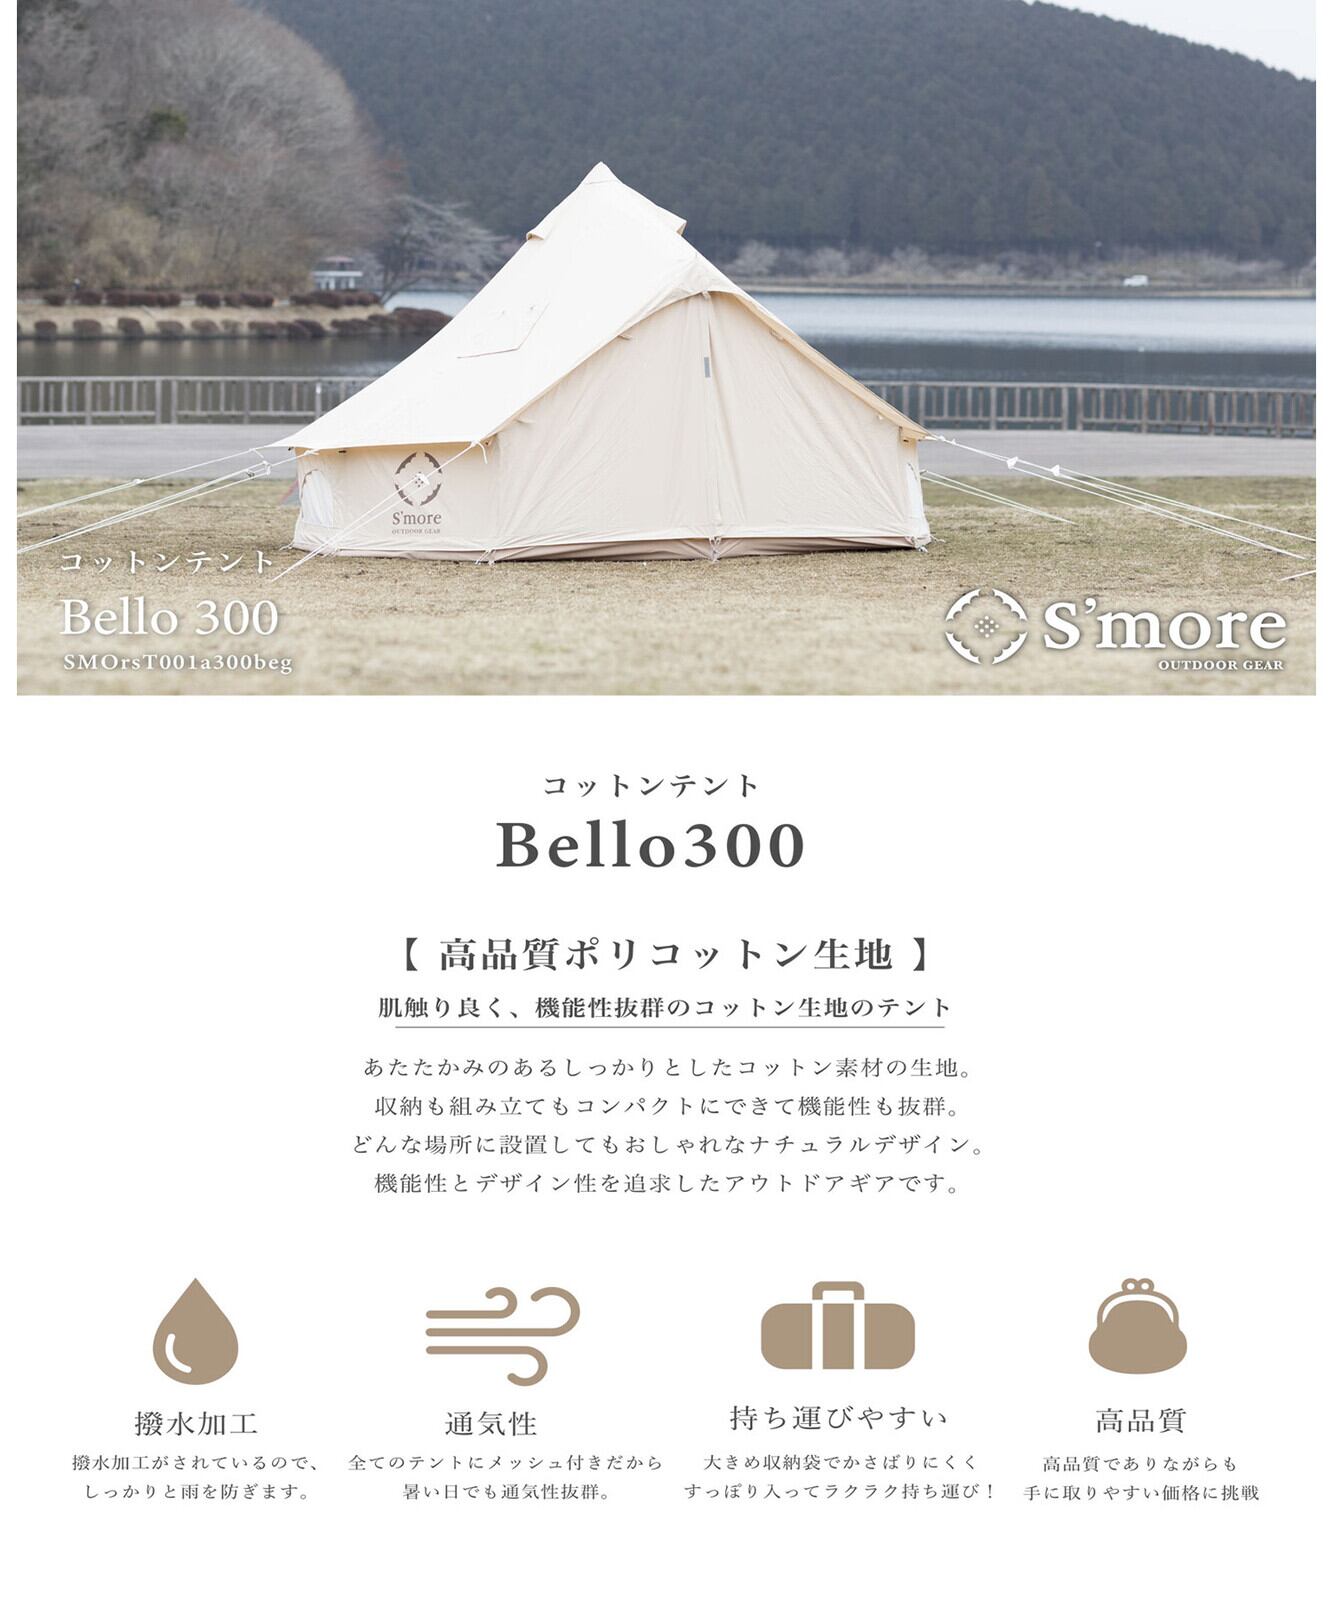 2〜5営業日発送【S'more /Bello 300】 ワンポールテント《 高品質撥水